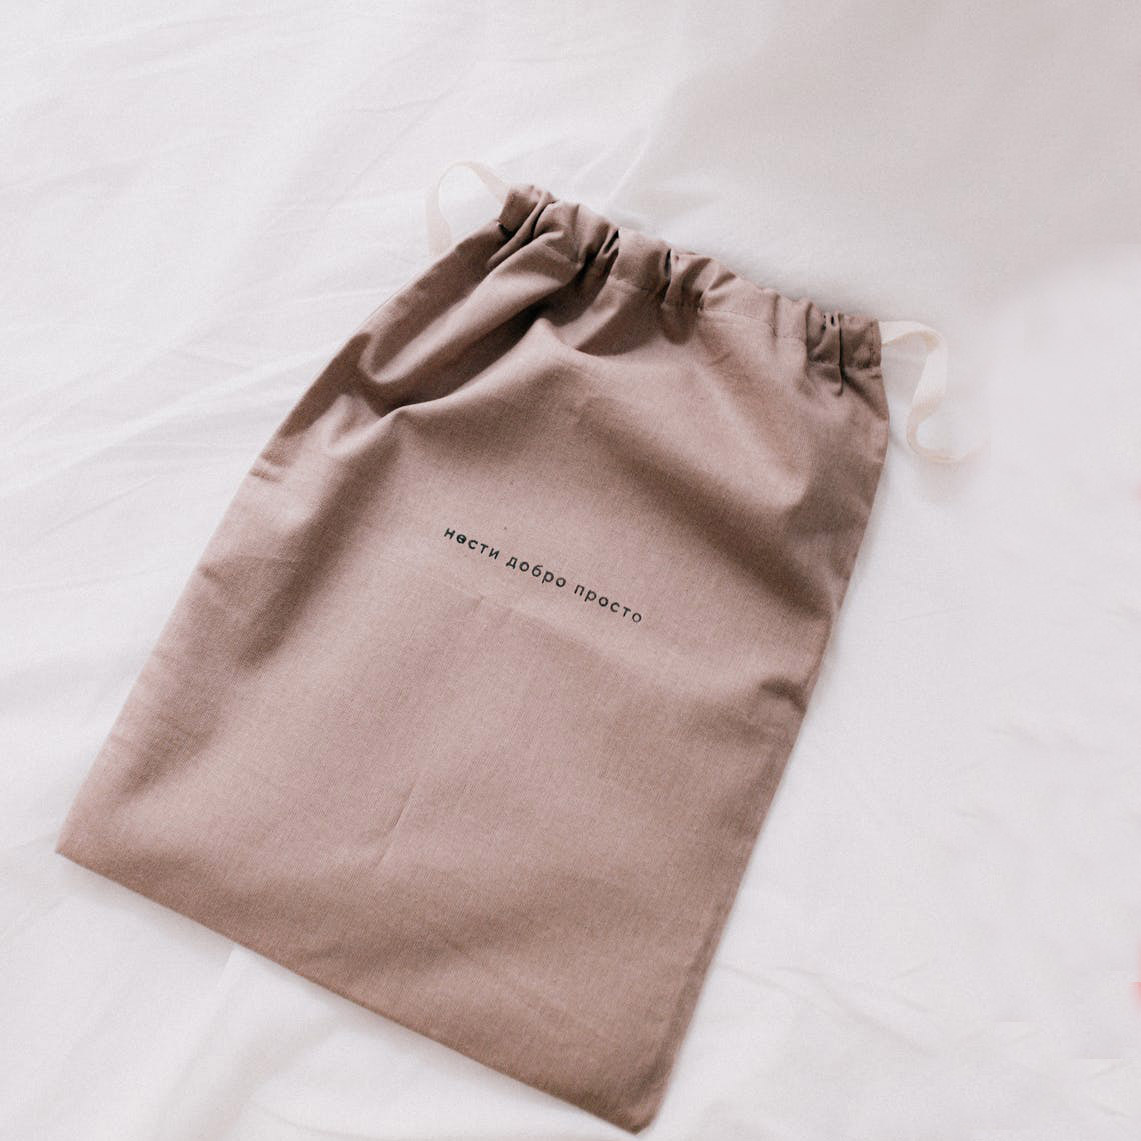 https://handbag-asia.com/wp-content/uploads/2020/06/linen-lingerie-bags.jpg